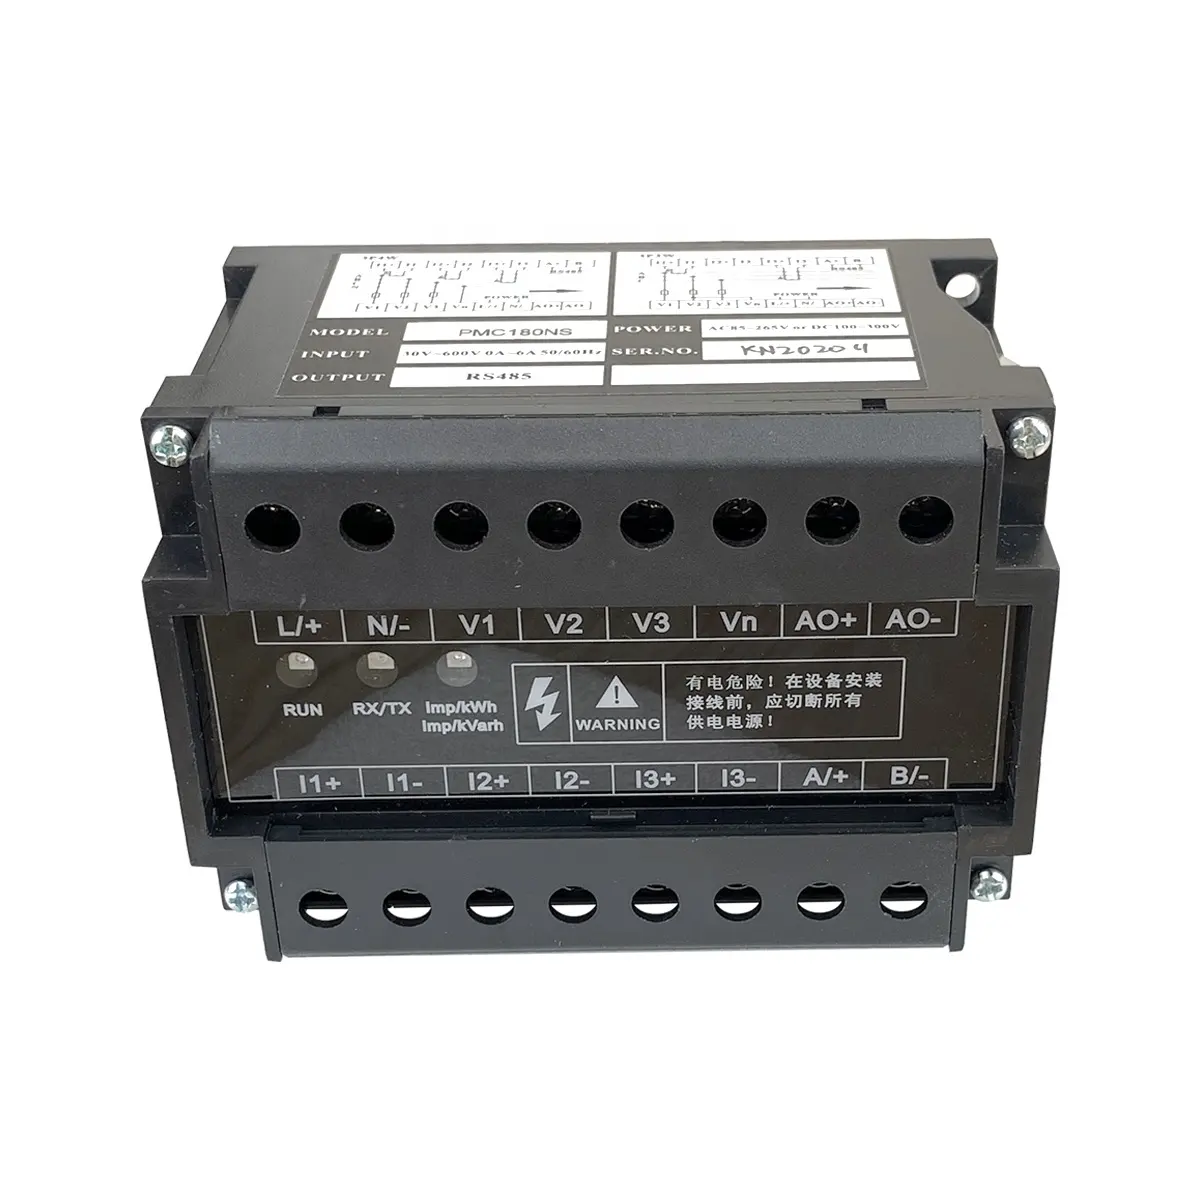 جهاز مراقبة الحلول الكهربائية الكفائة بالطاقة جهاز قياس الطاقة الكهربائية rs485